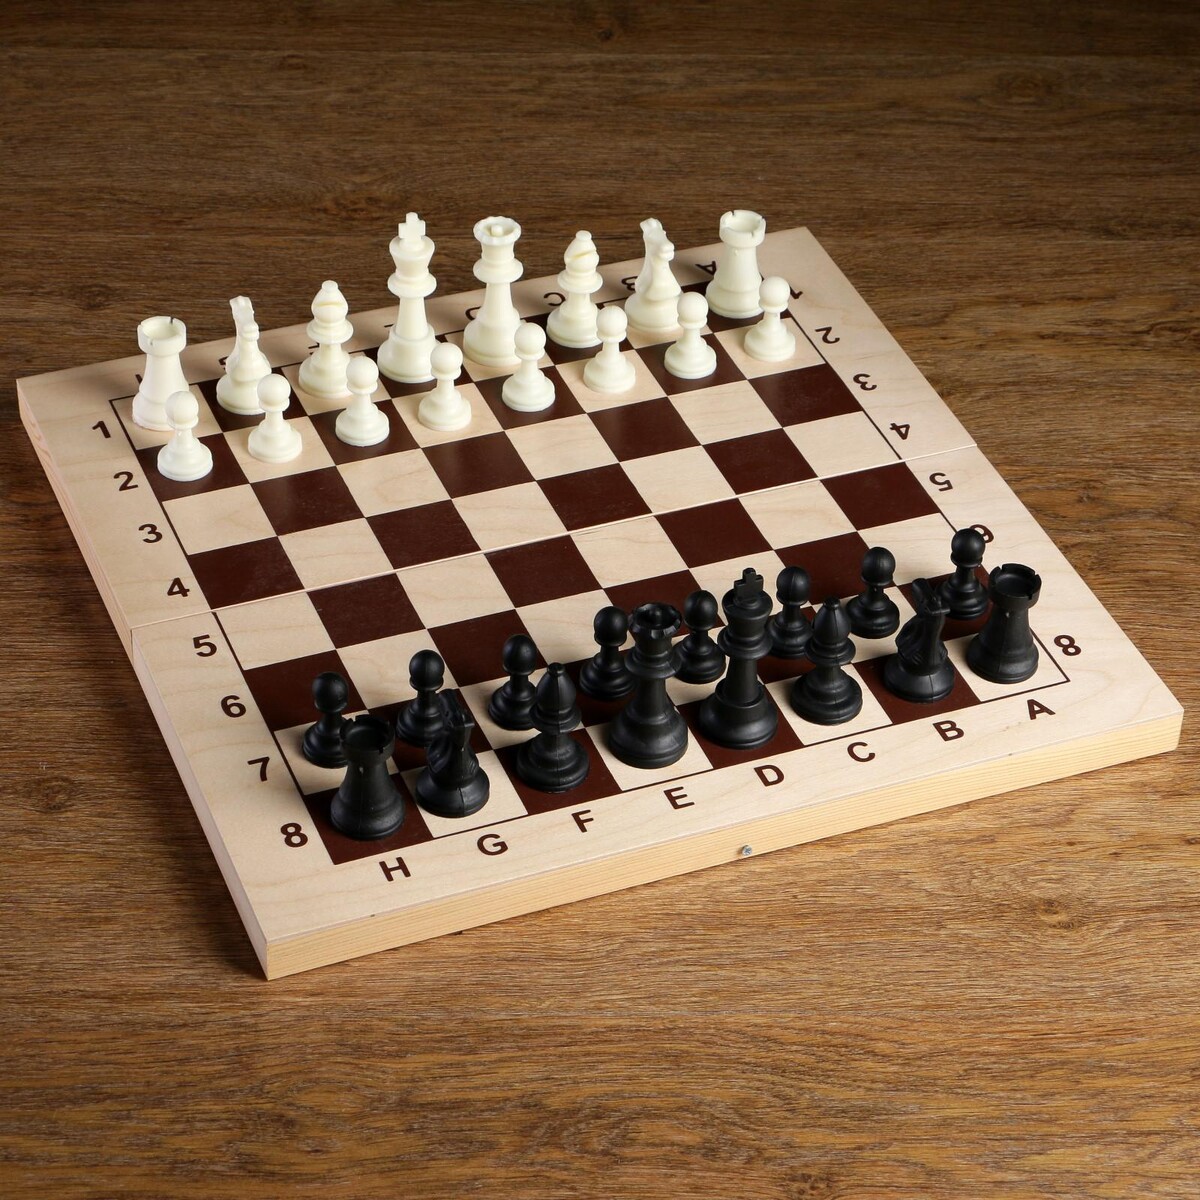 Шахматные фигуры, пластик, король h-9 см, пешка h-4.1 см письма скорпиона проходная пешка